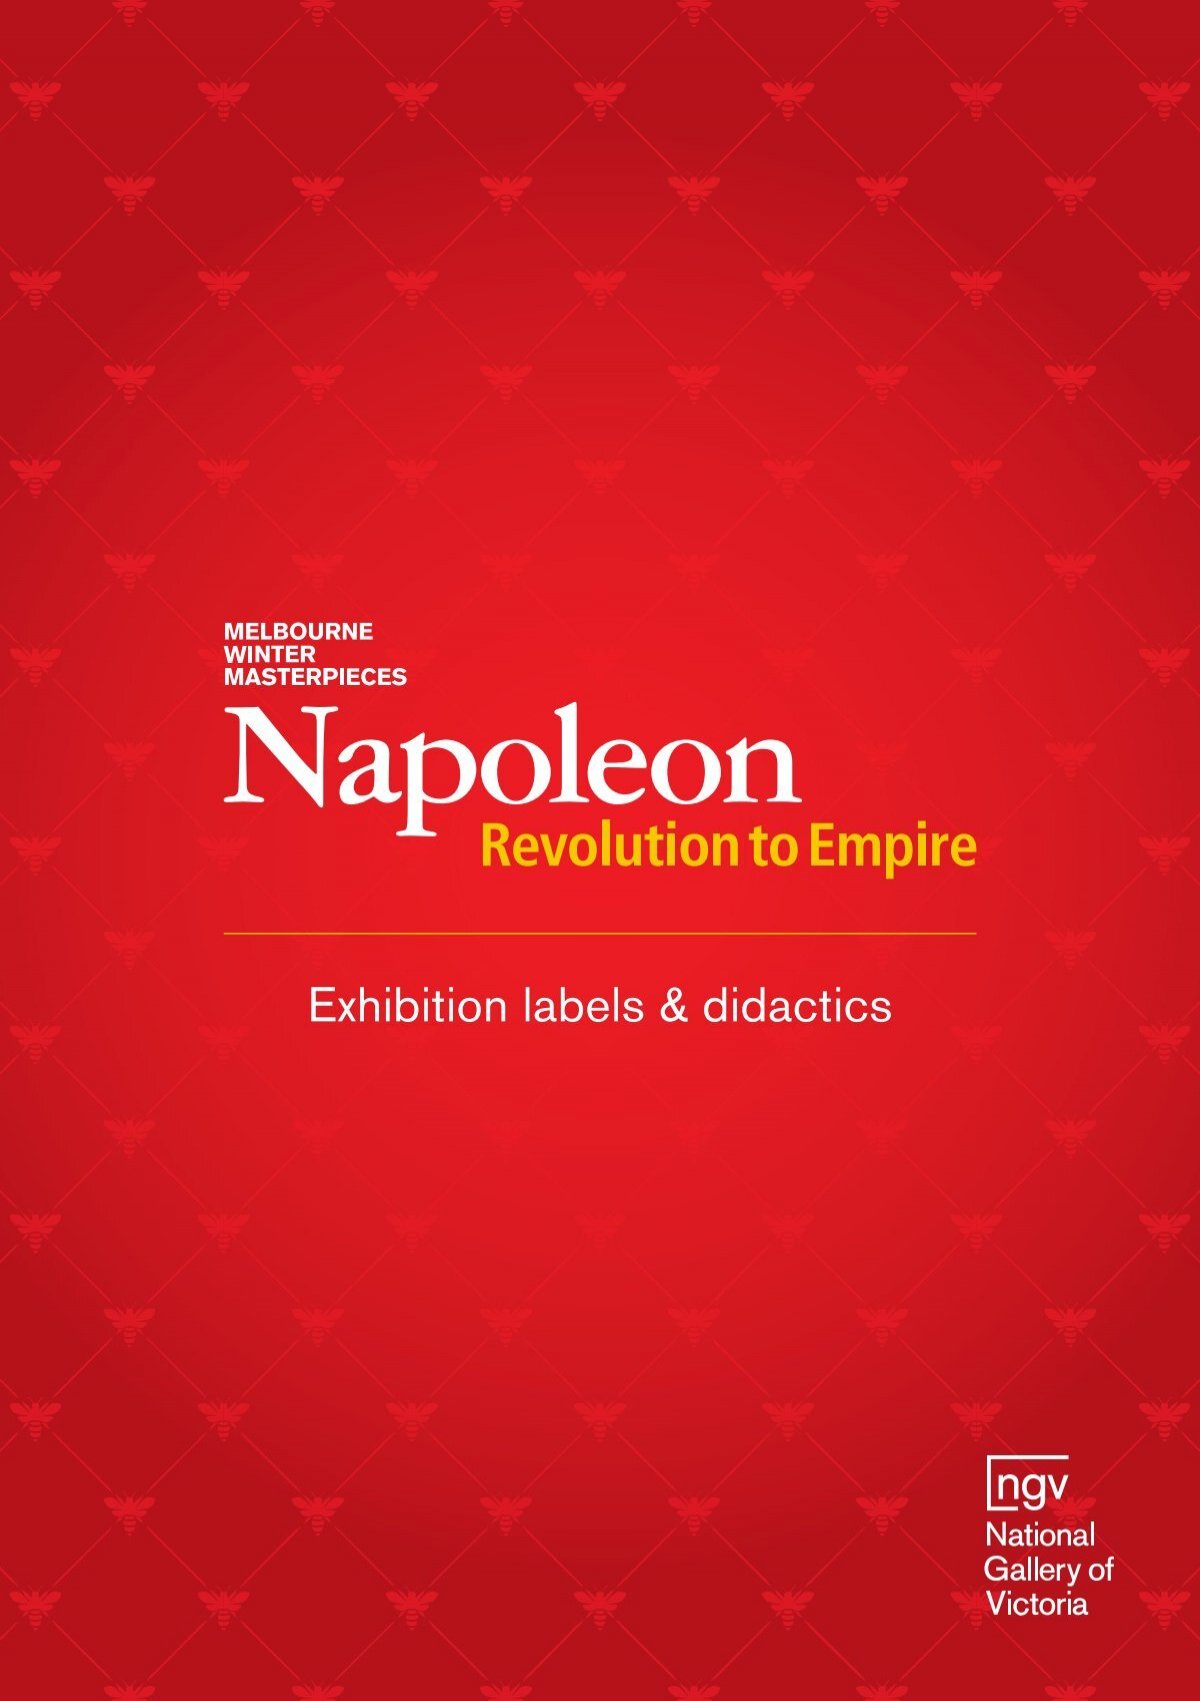 Drapeaux de la garde impériale de napoléon 1804 - 1812 - Napoleon and glory  - Napoleonic flags, imperial eagles